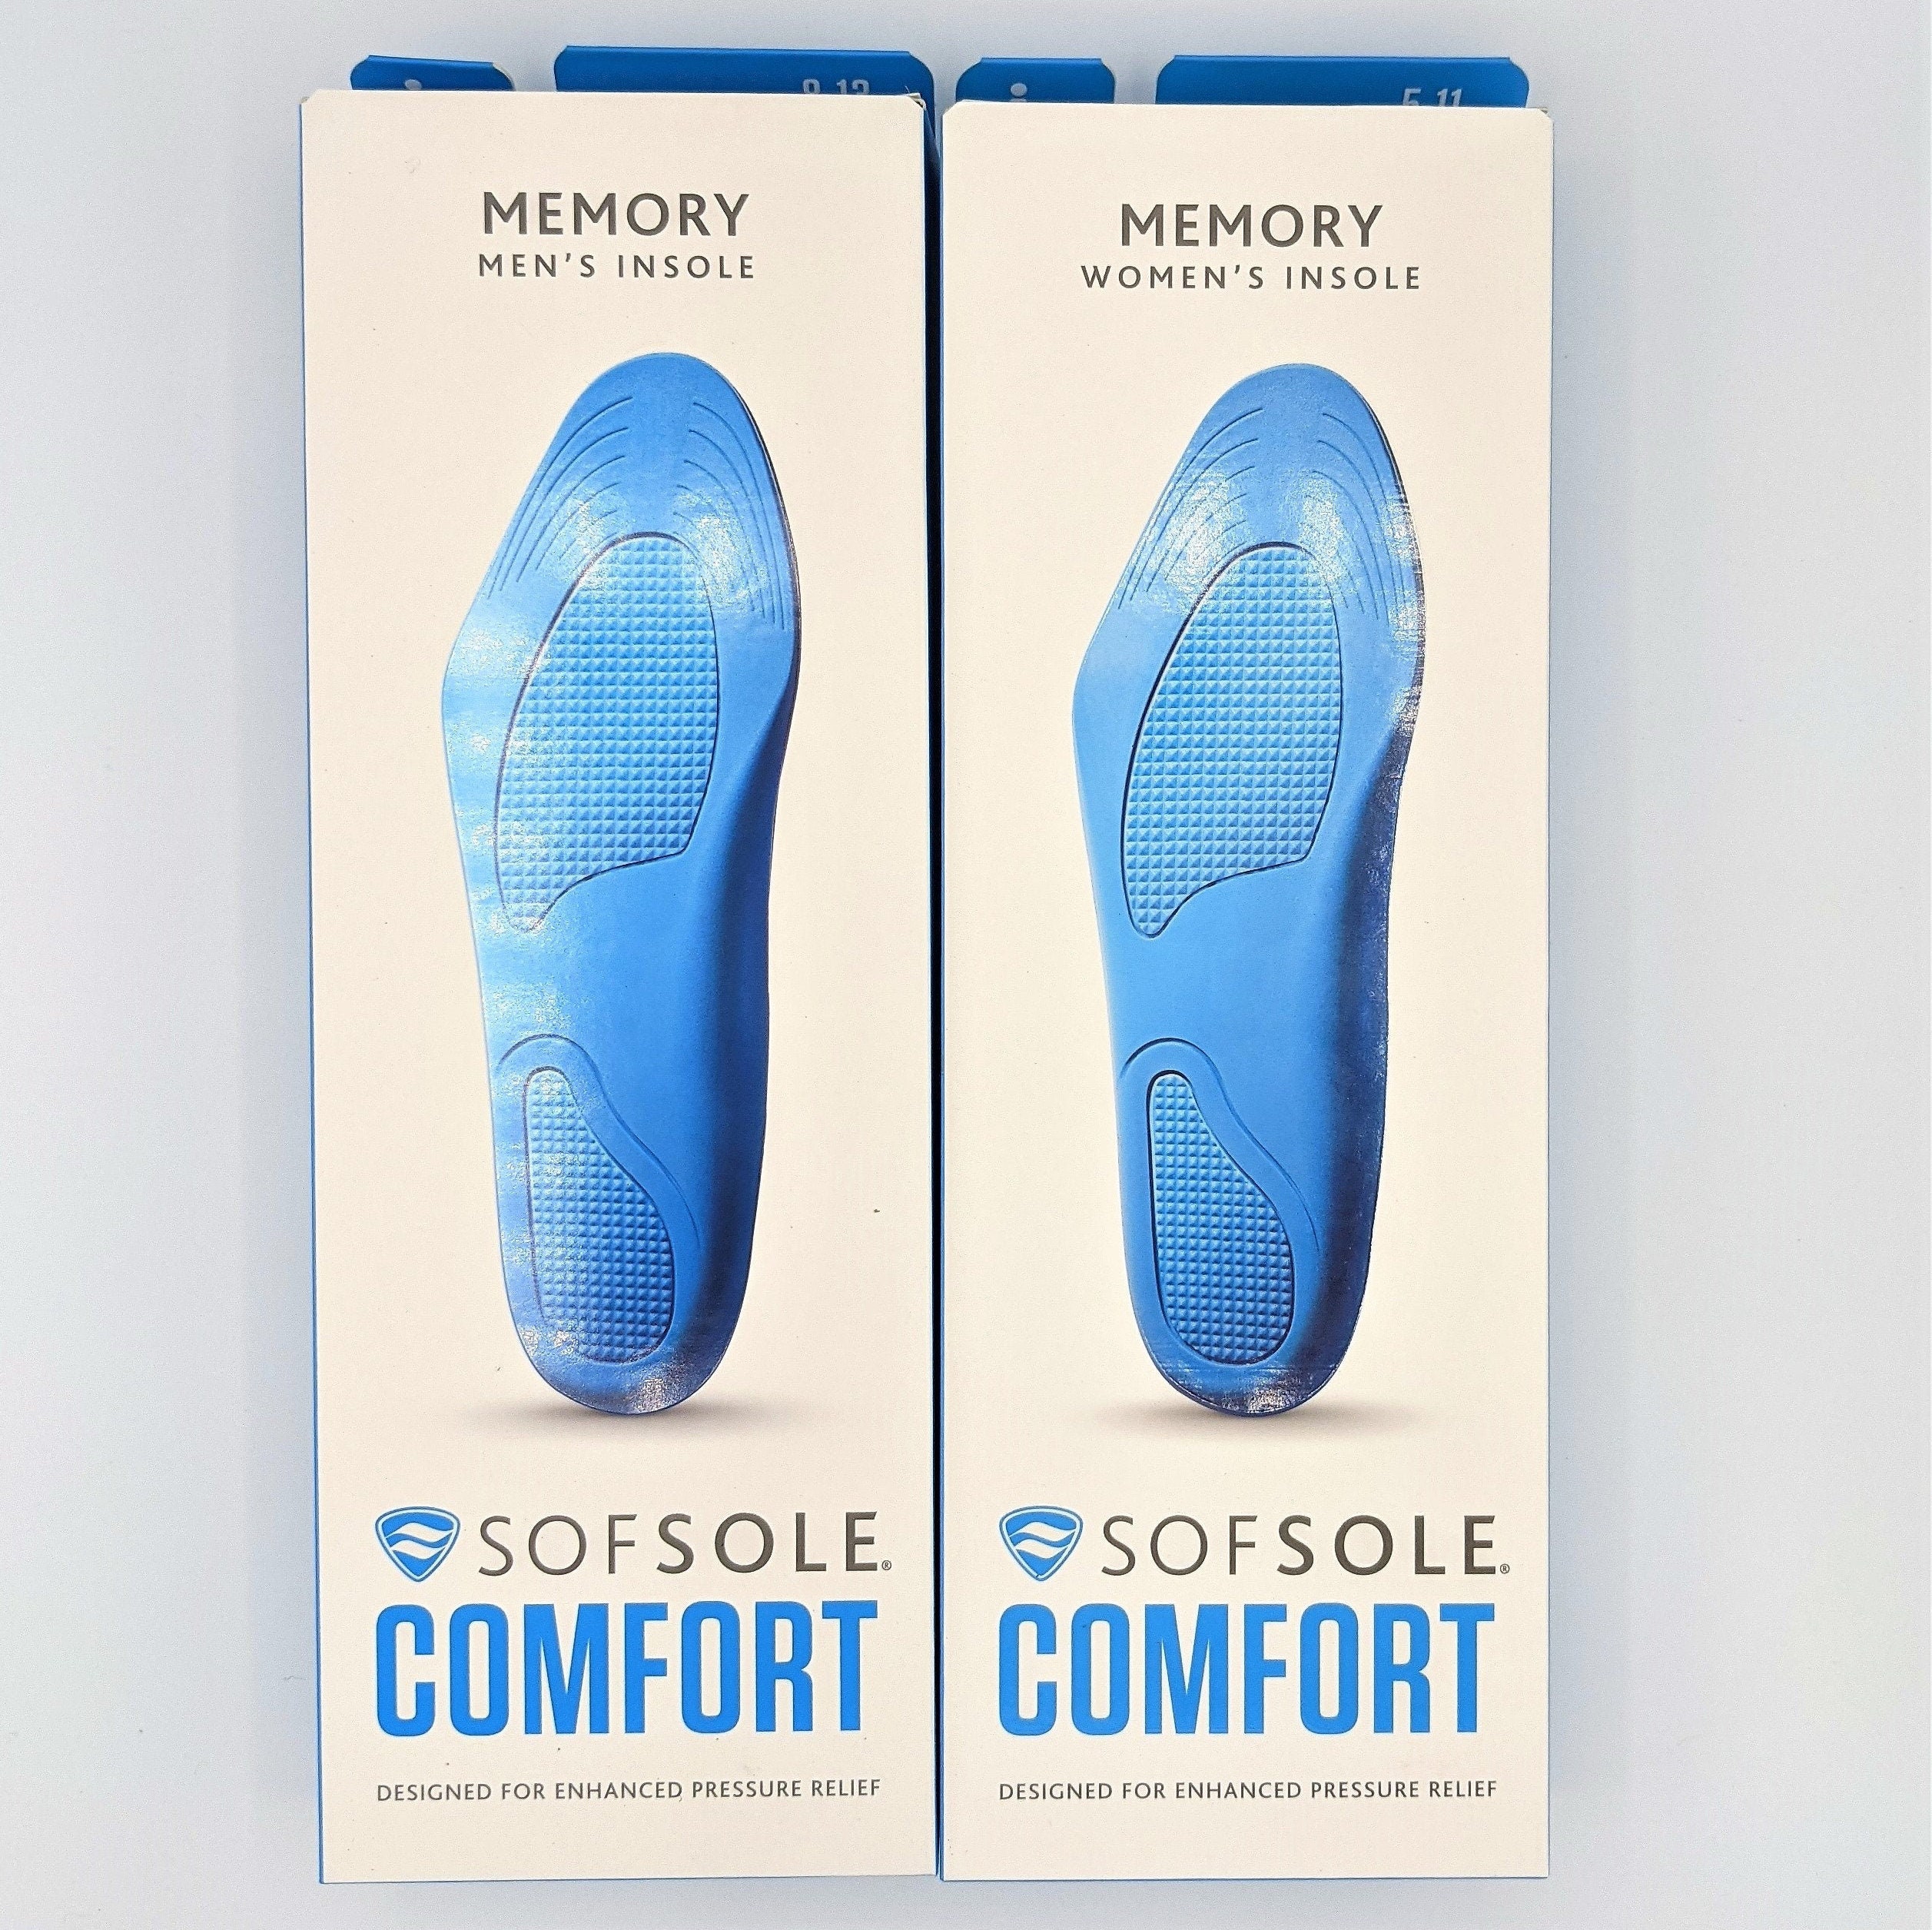 Подошва комфорт. Ботинки Comfort sole. Эргономичная форма подошвы комфорт валберис.